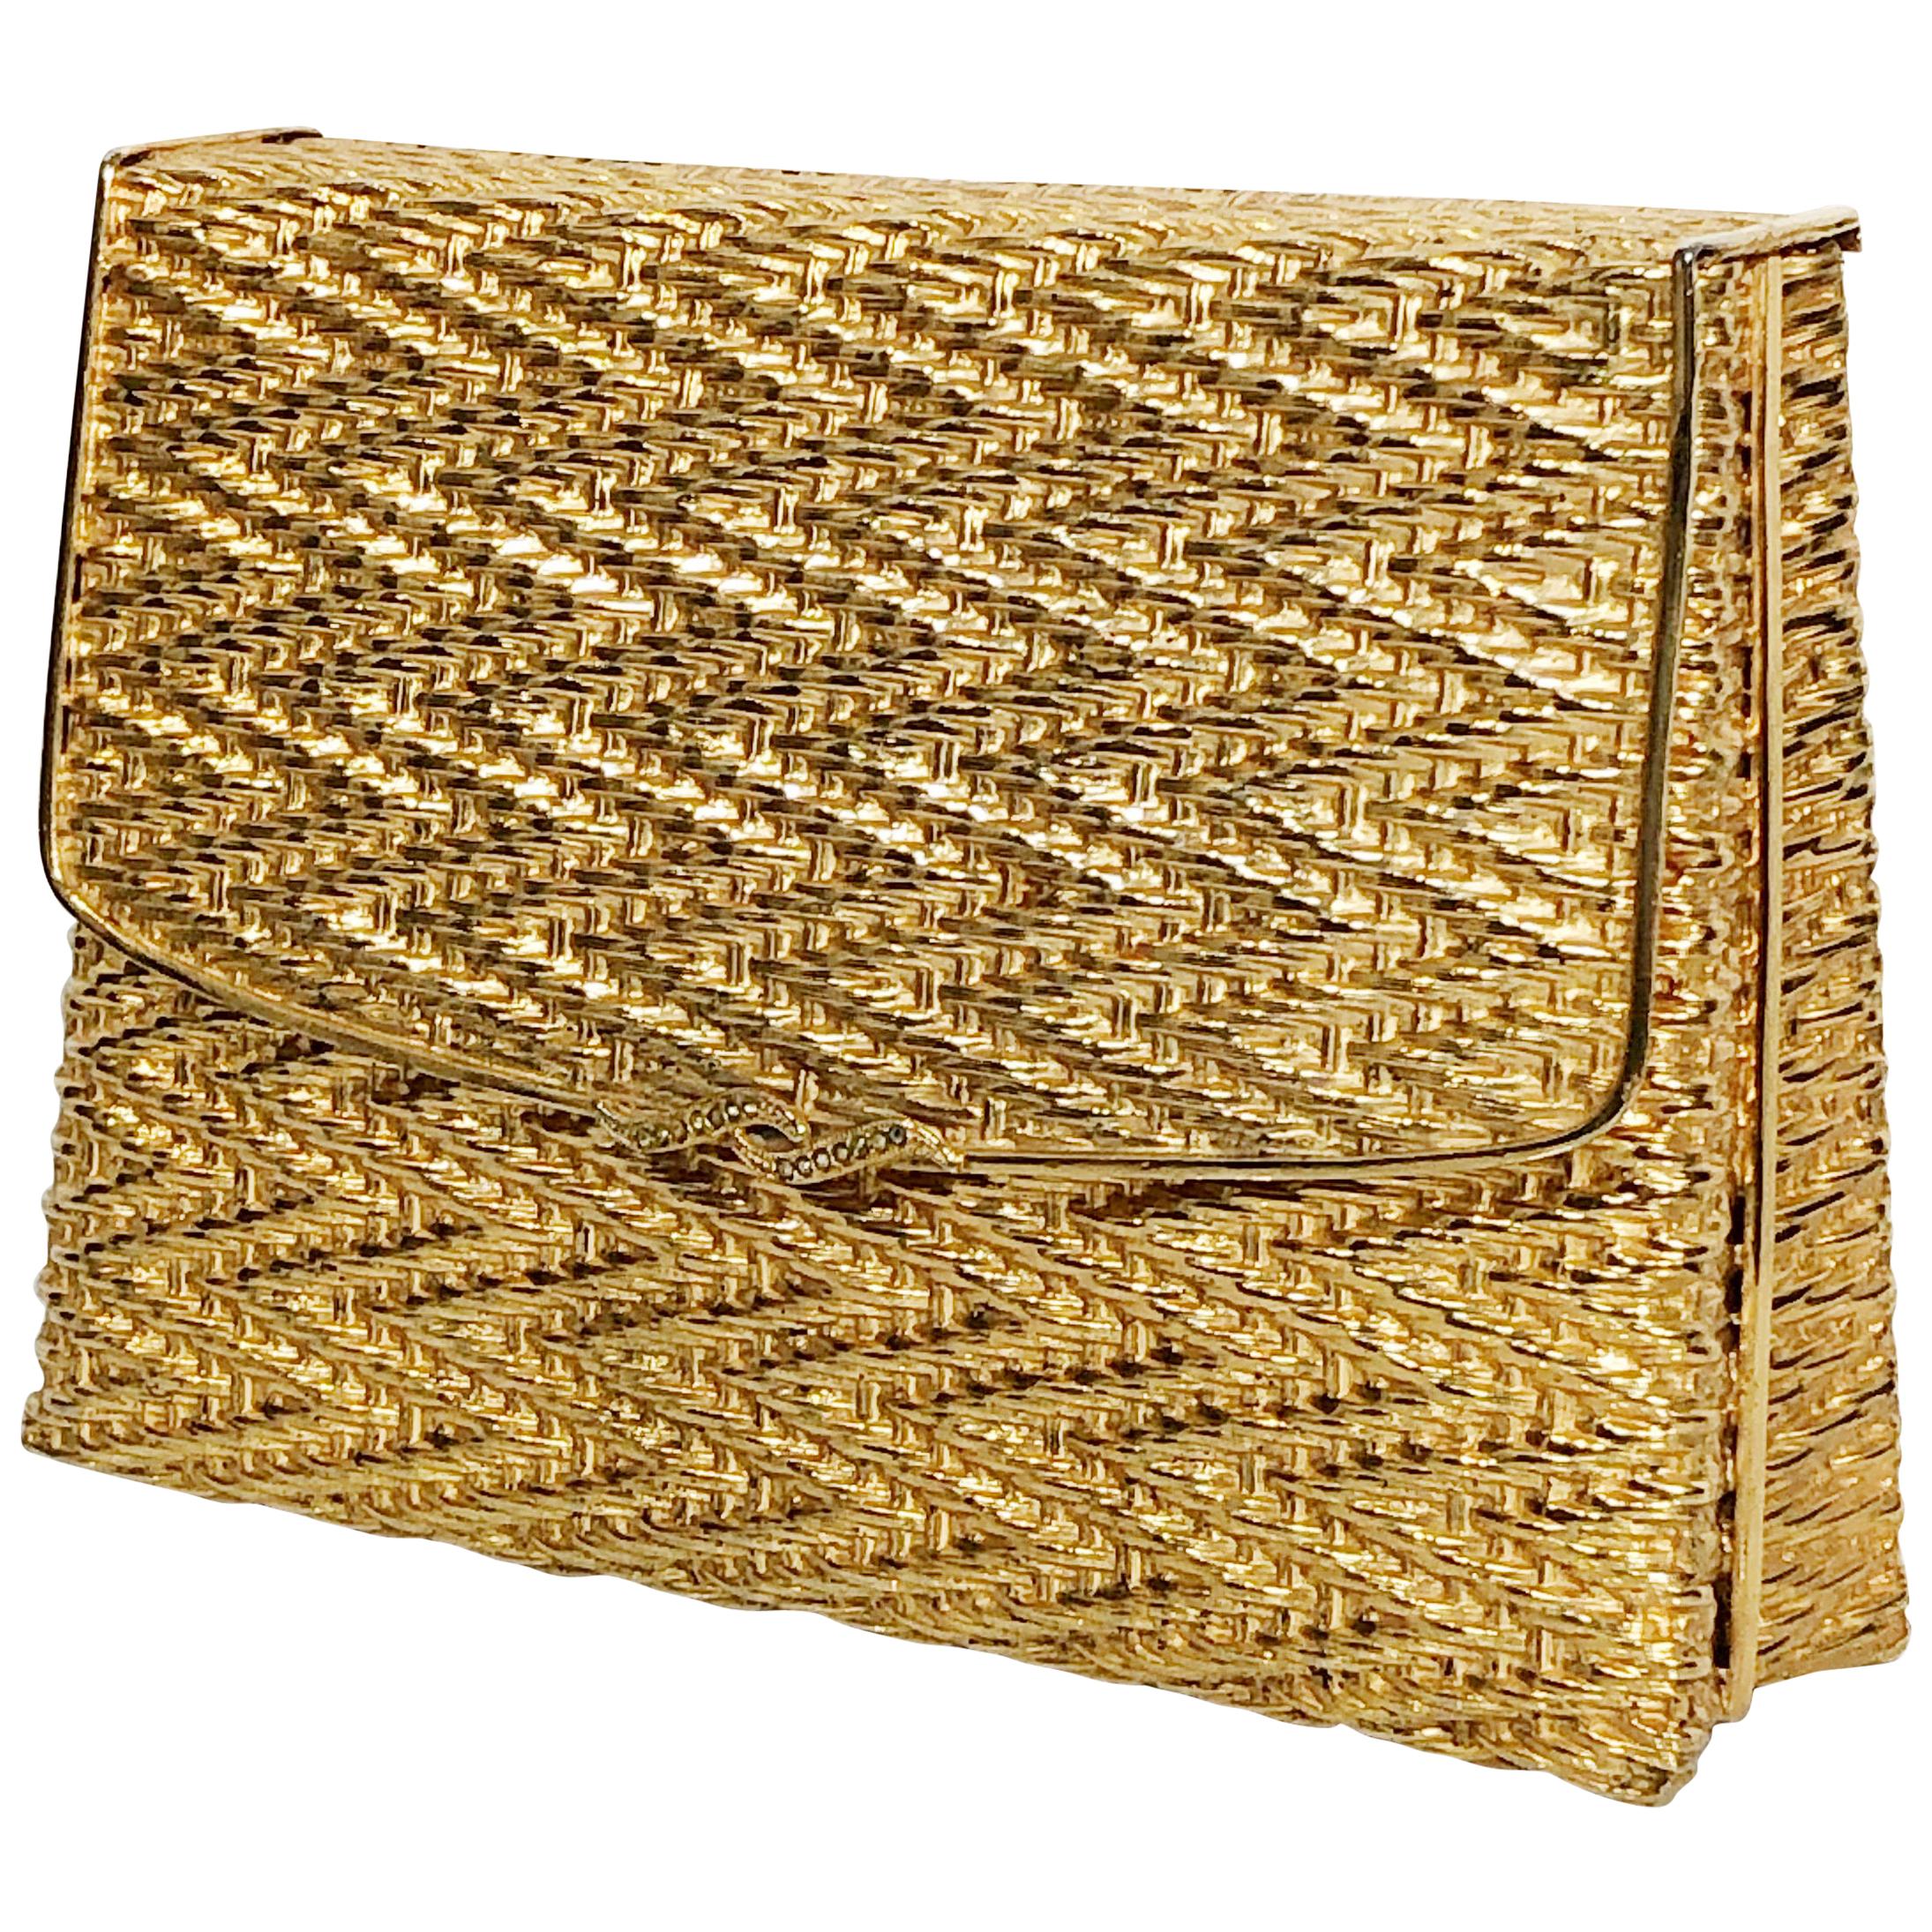 1960 Gold Metal Basket Weave Textured Evening Box Clutch w/ Mirror